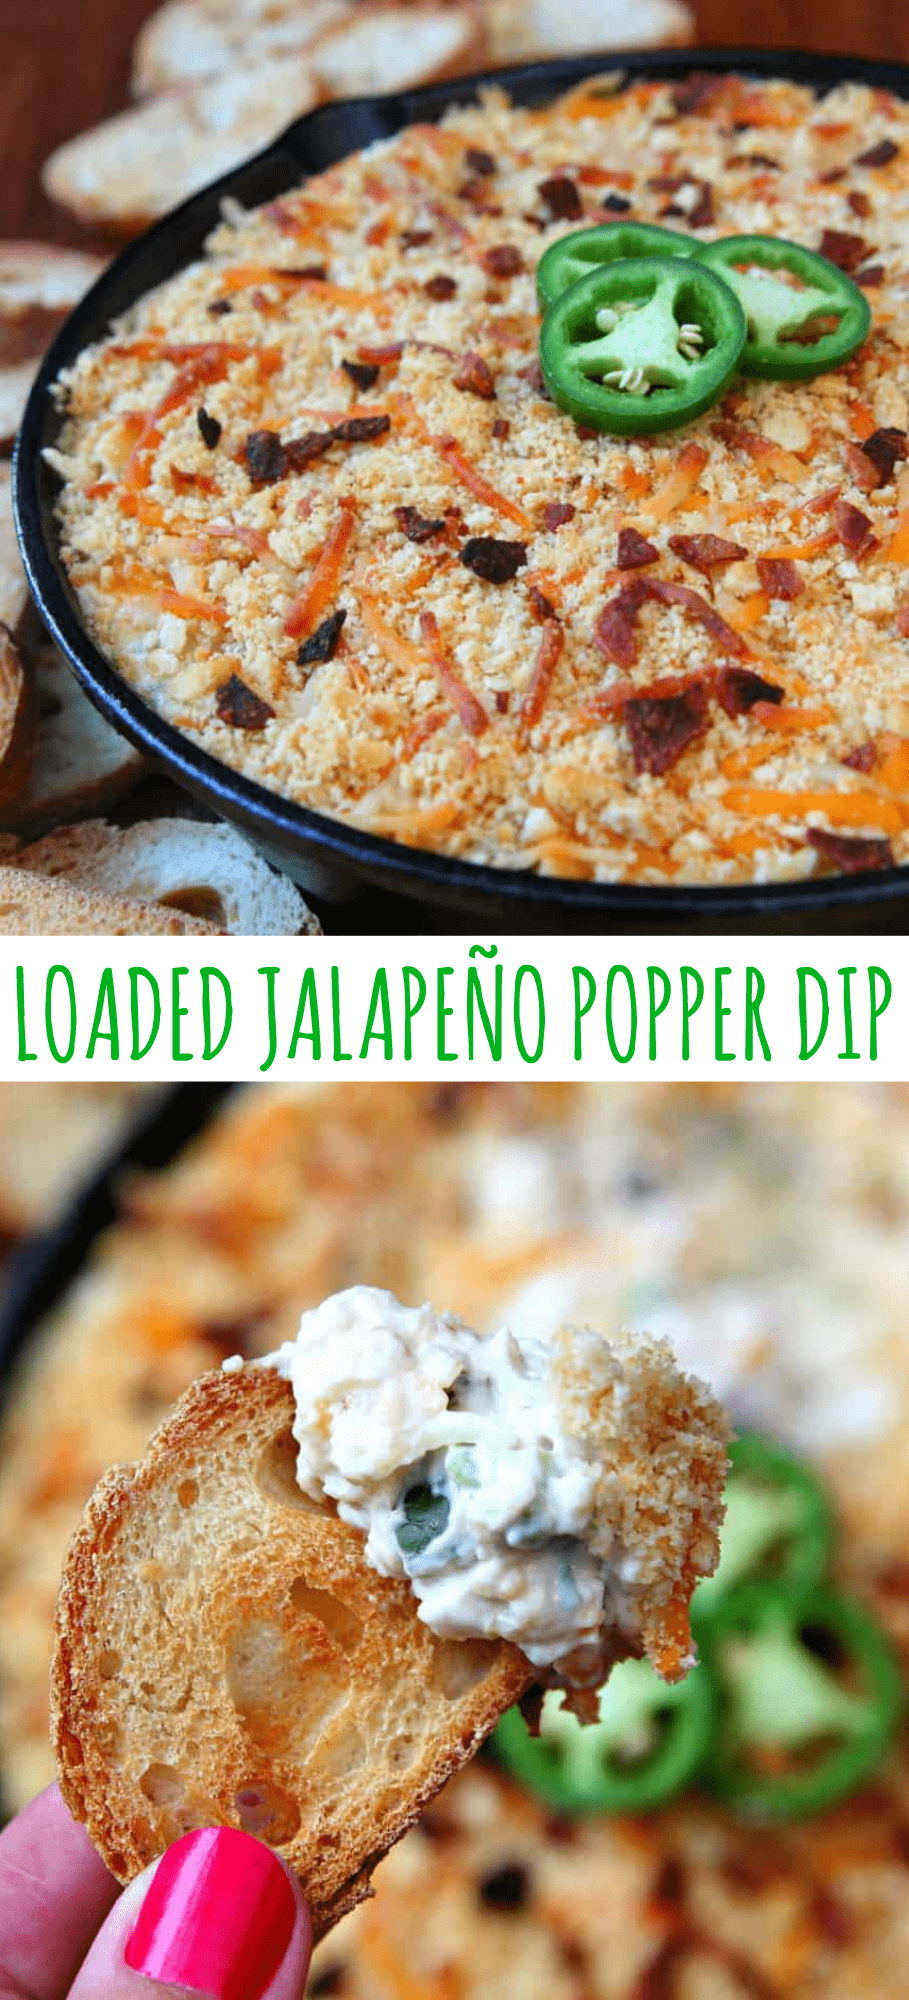 Loaded Jalapeno Popper Dip